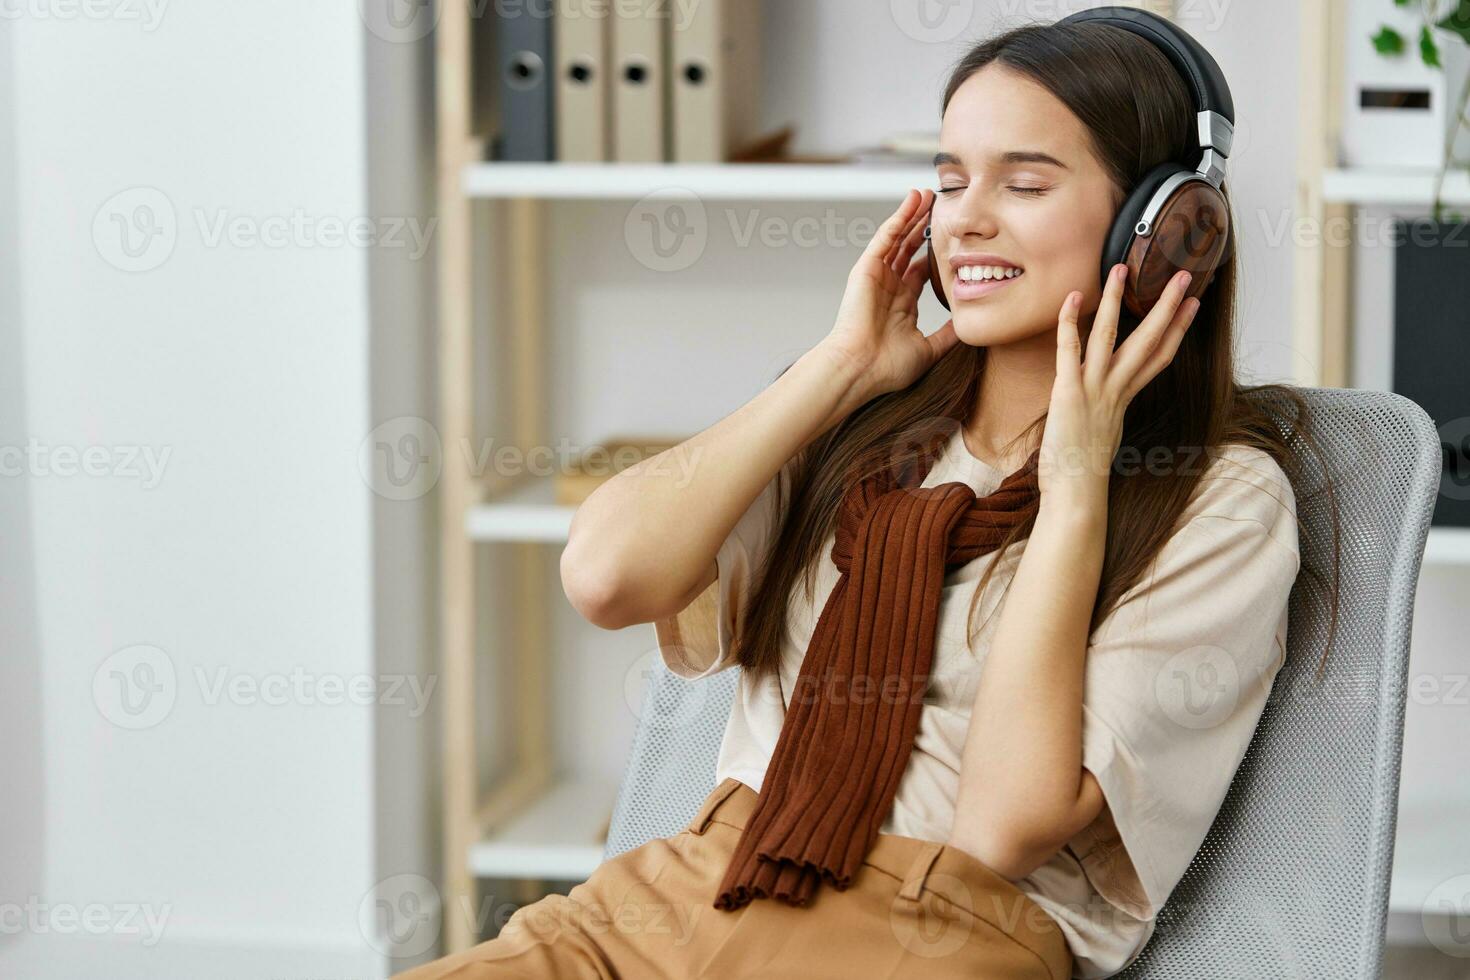 Adolescente estilo de vida música auriculares niña contento meditación  teléfono sonrisa silla 26407685 Foto de stock en Vecteezy